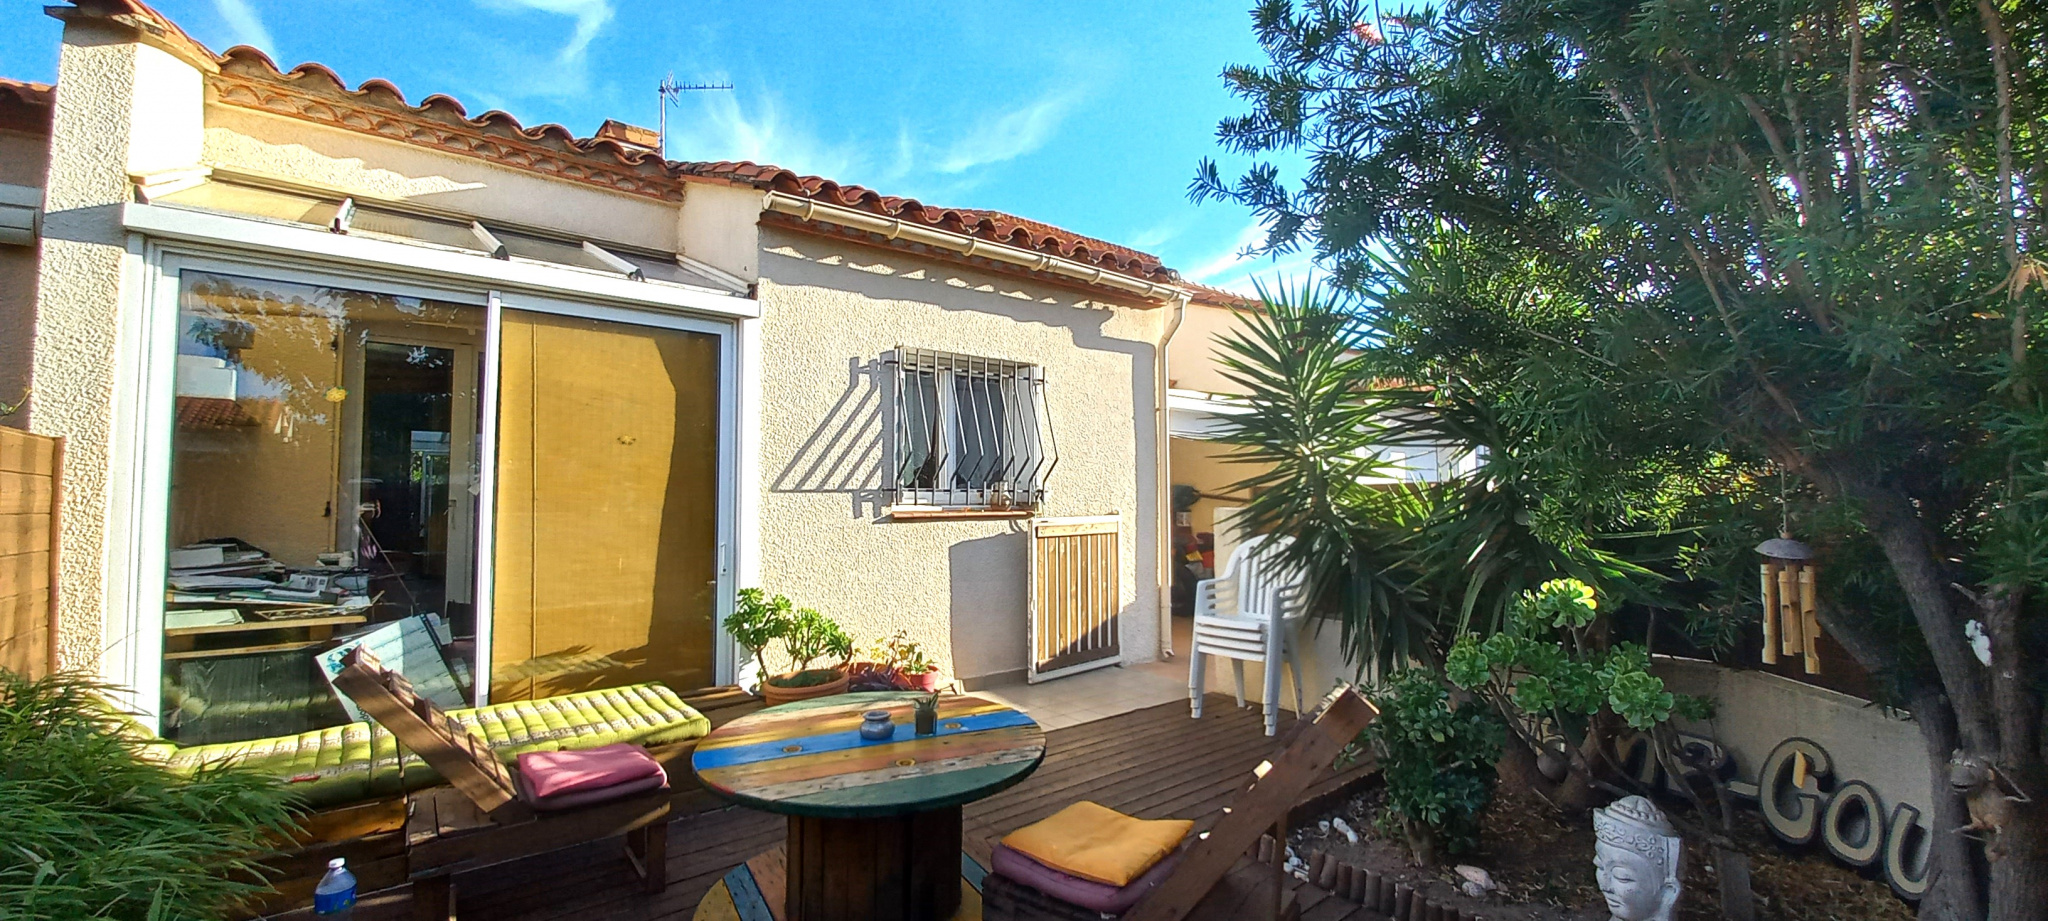 À vendre maison/villa de 85m2 à argelès-sur-mer (66700) - Photo 1'